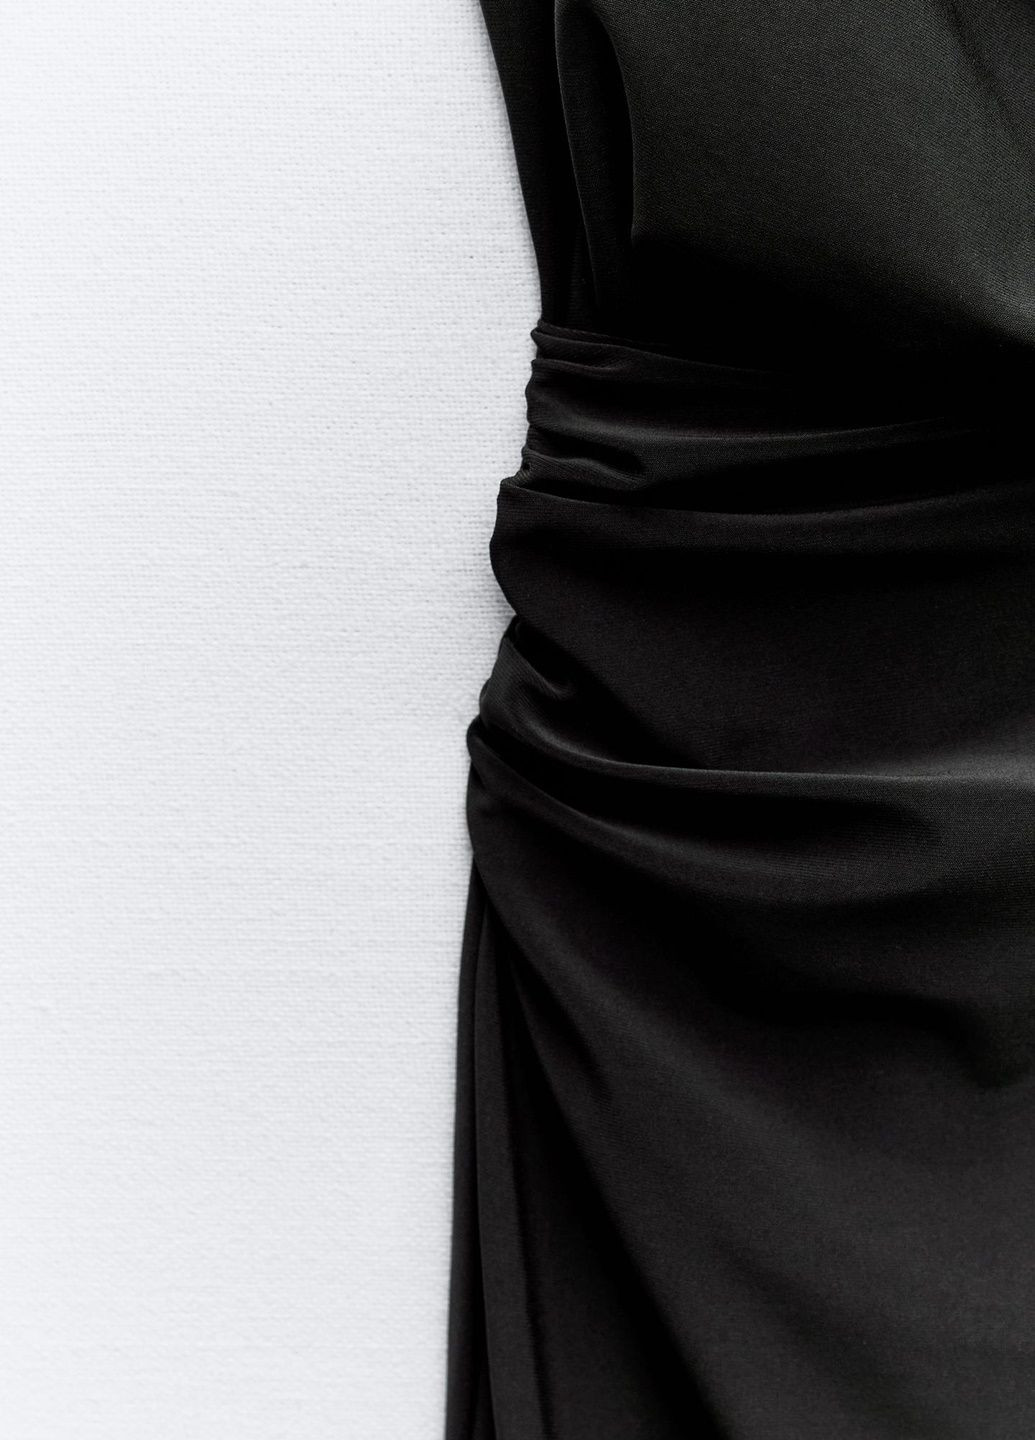 Черное вечернее платье Zara однотонное